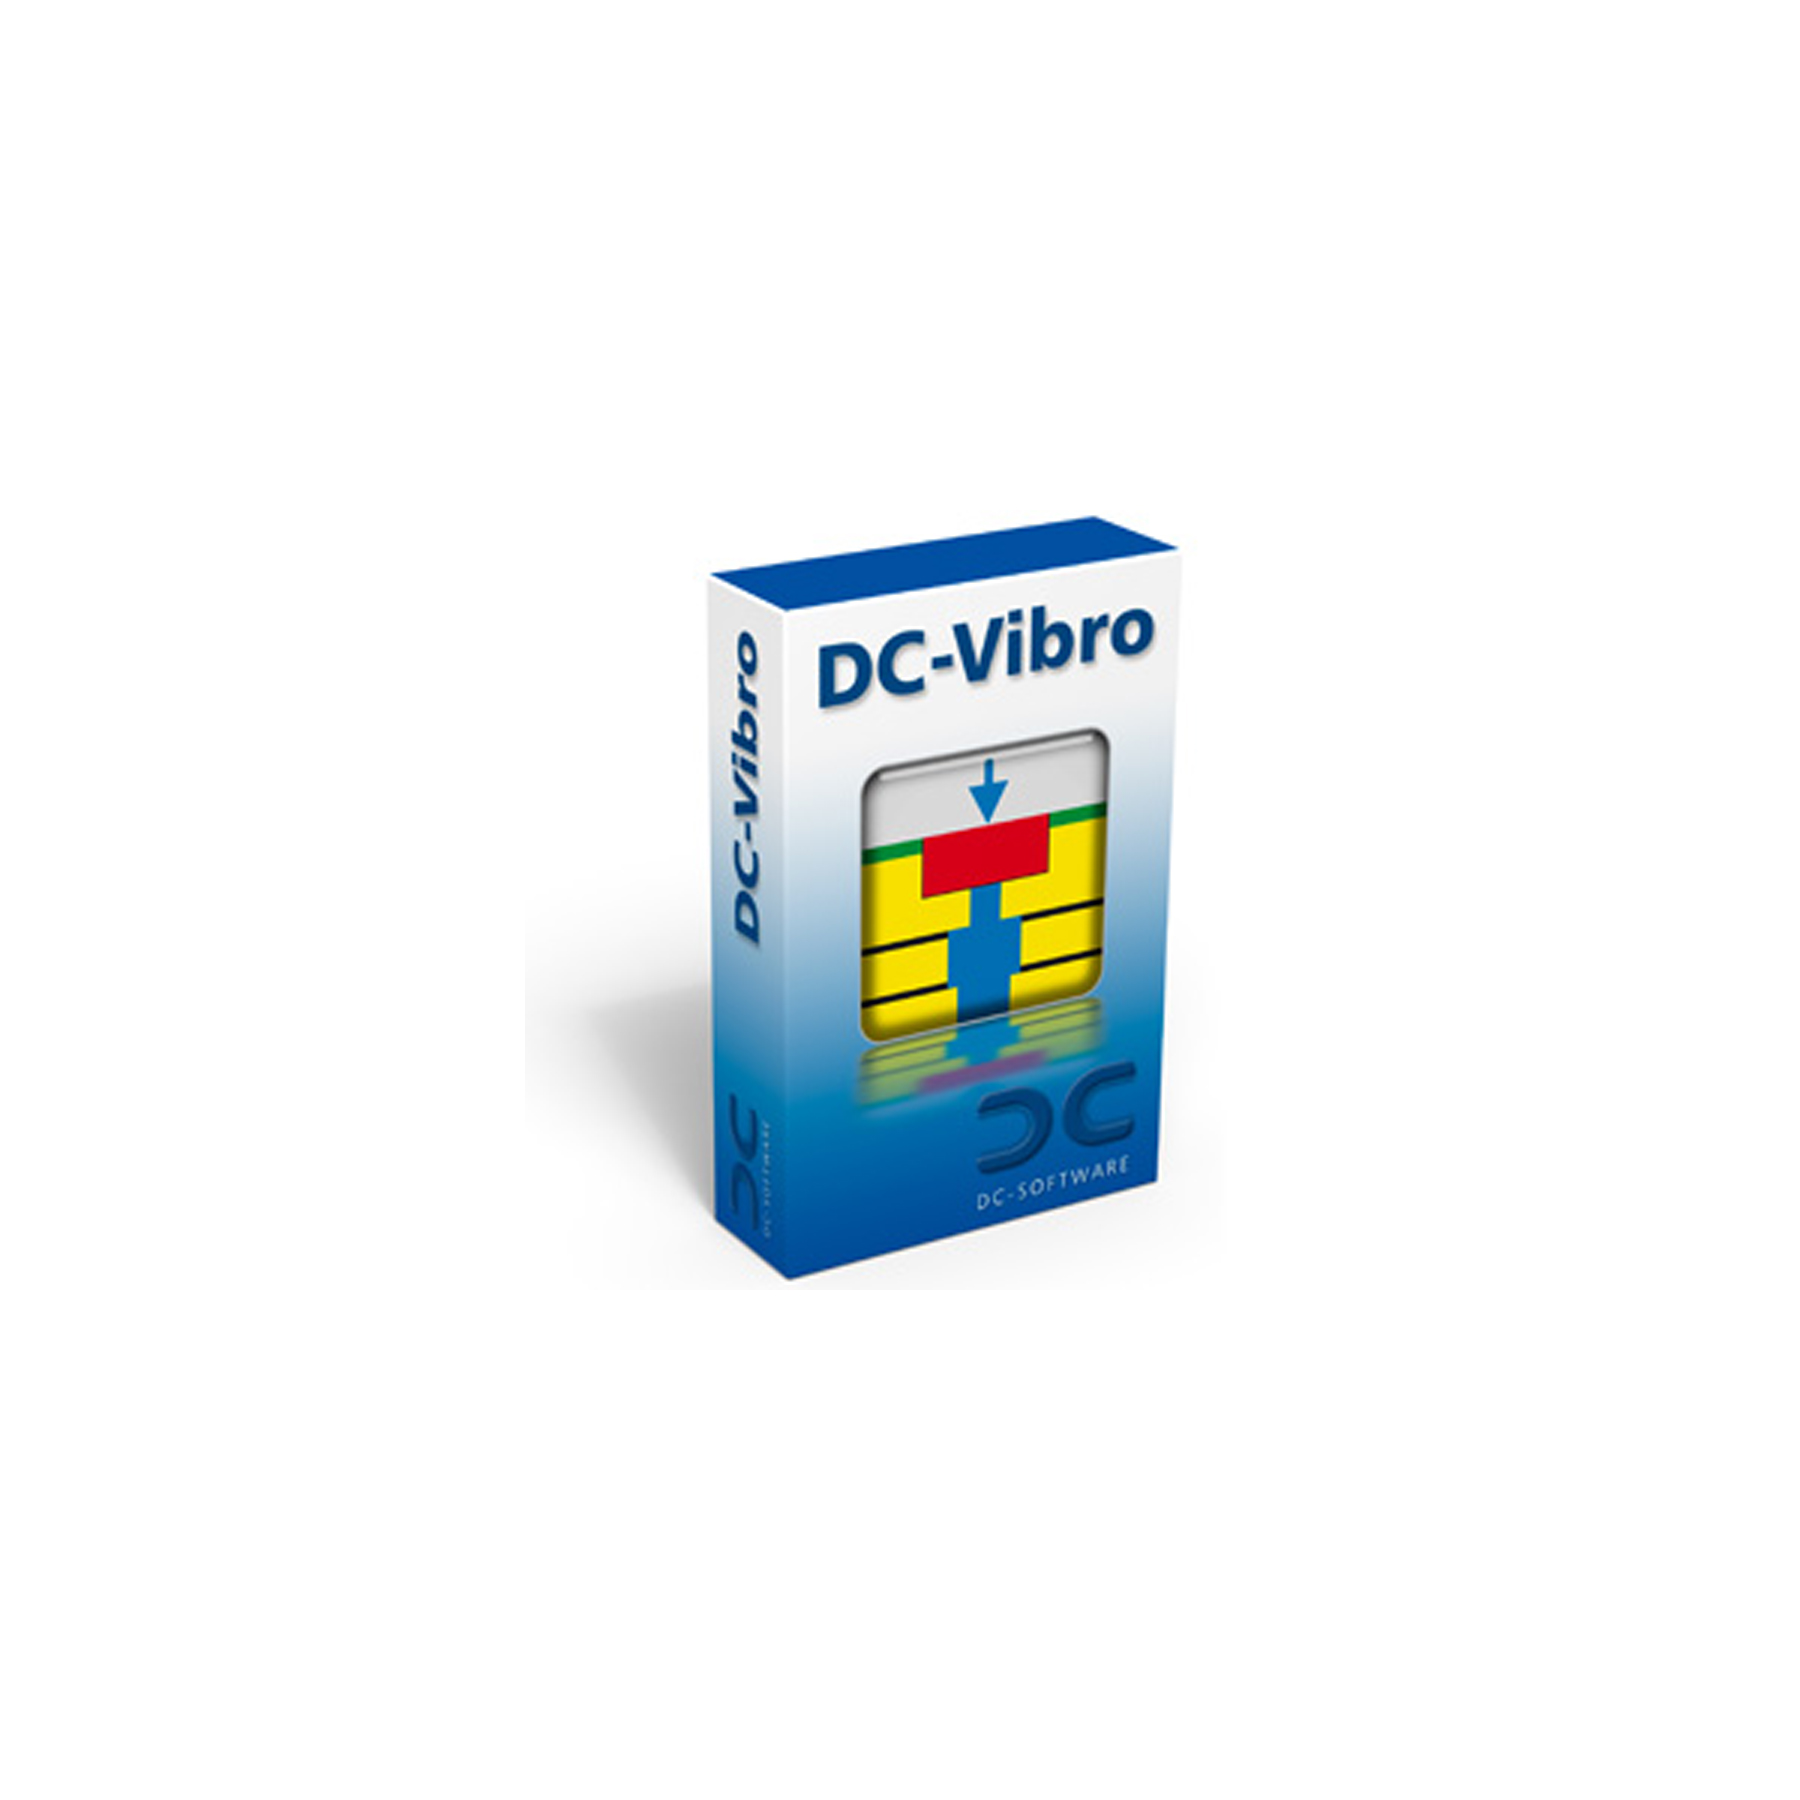 DC-Vibro-DC-Vibro for Windows